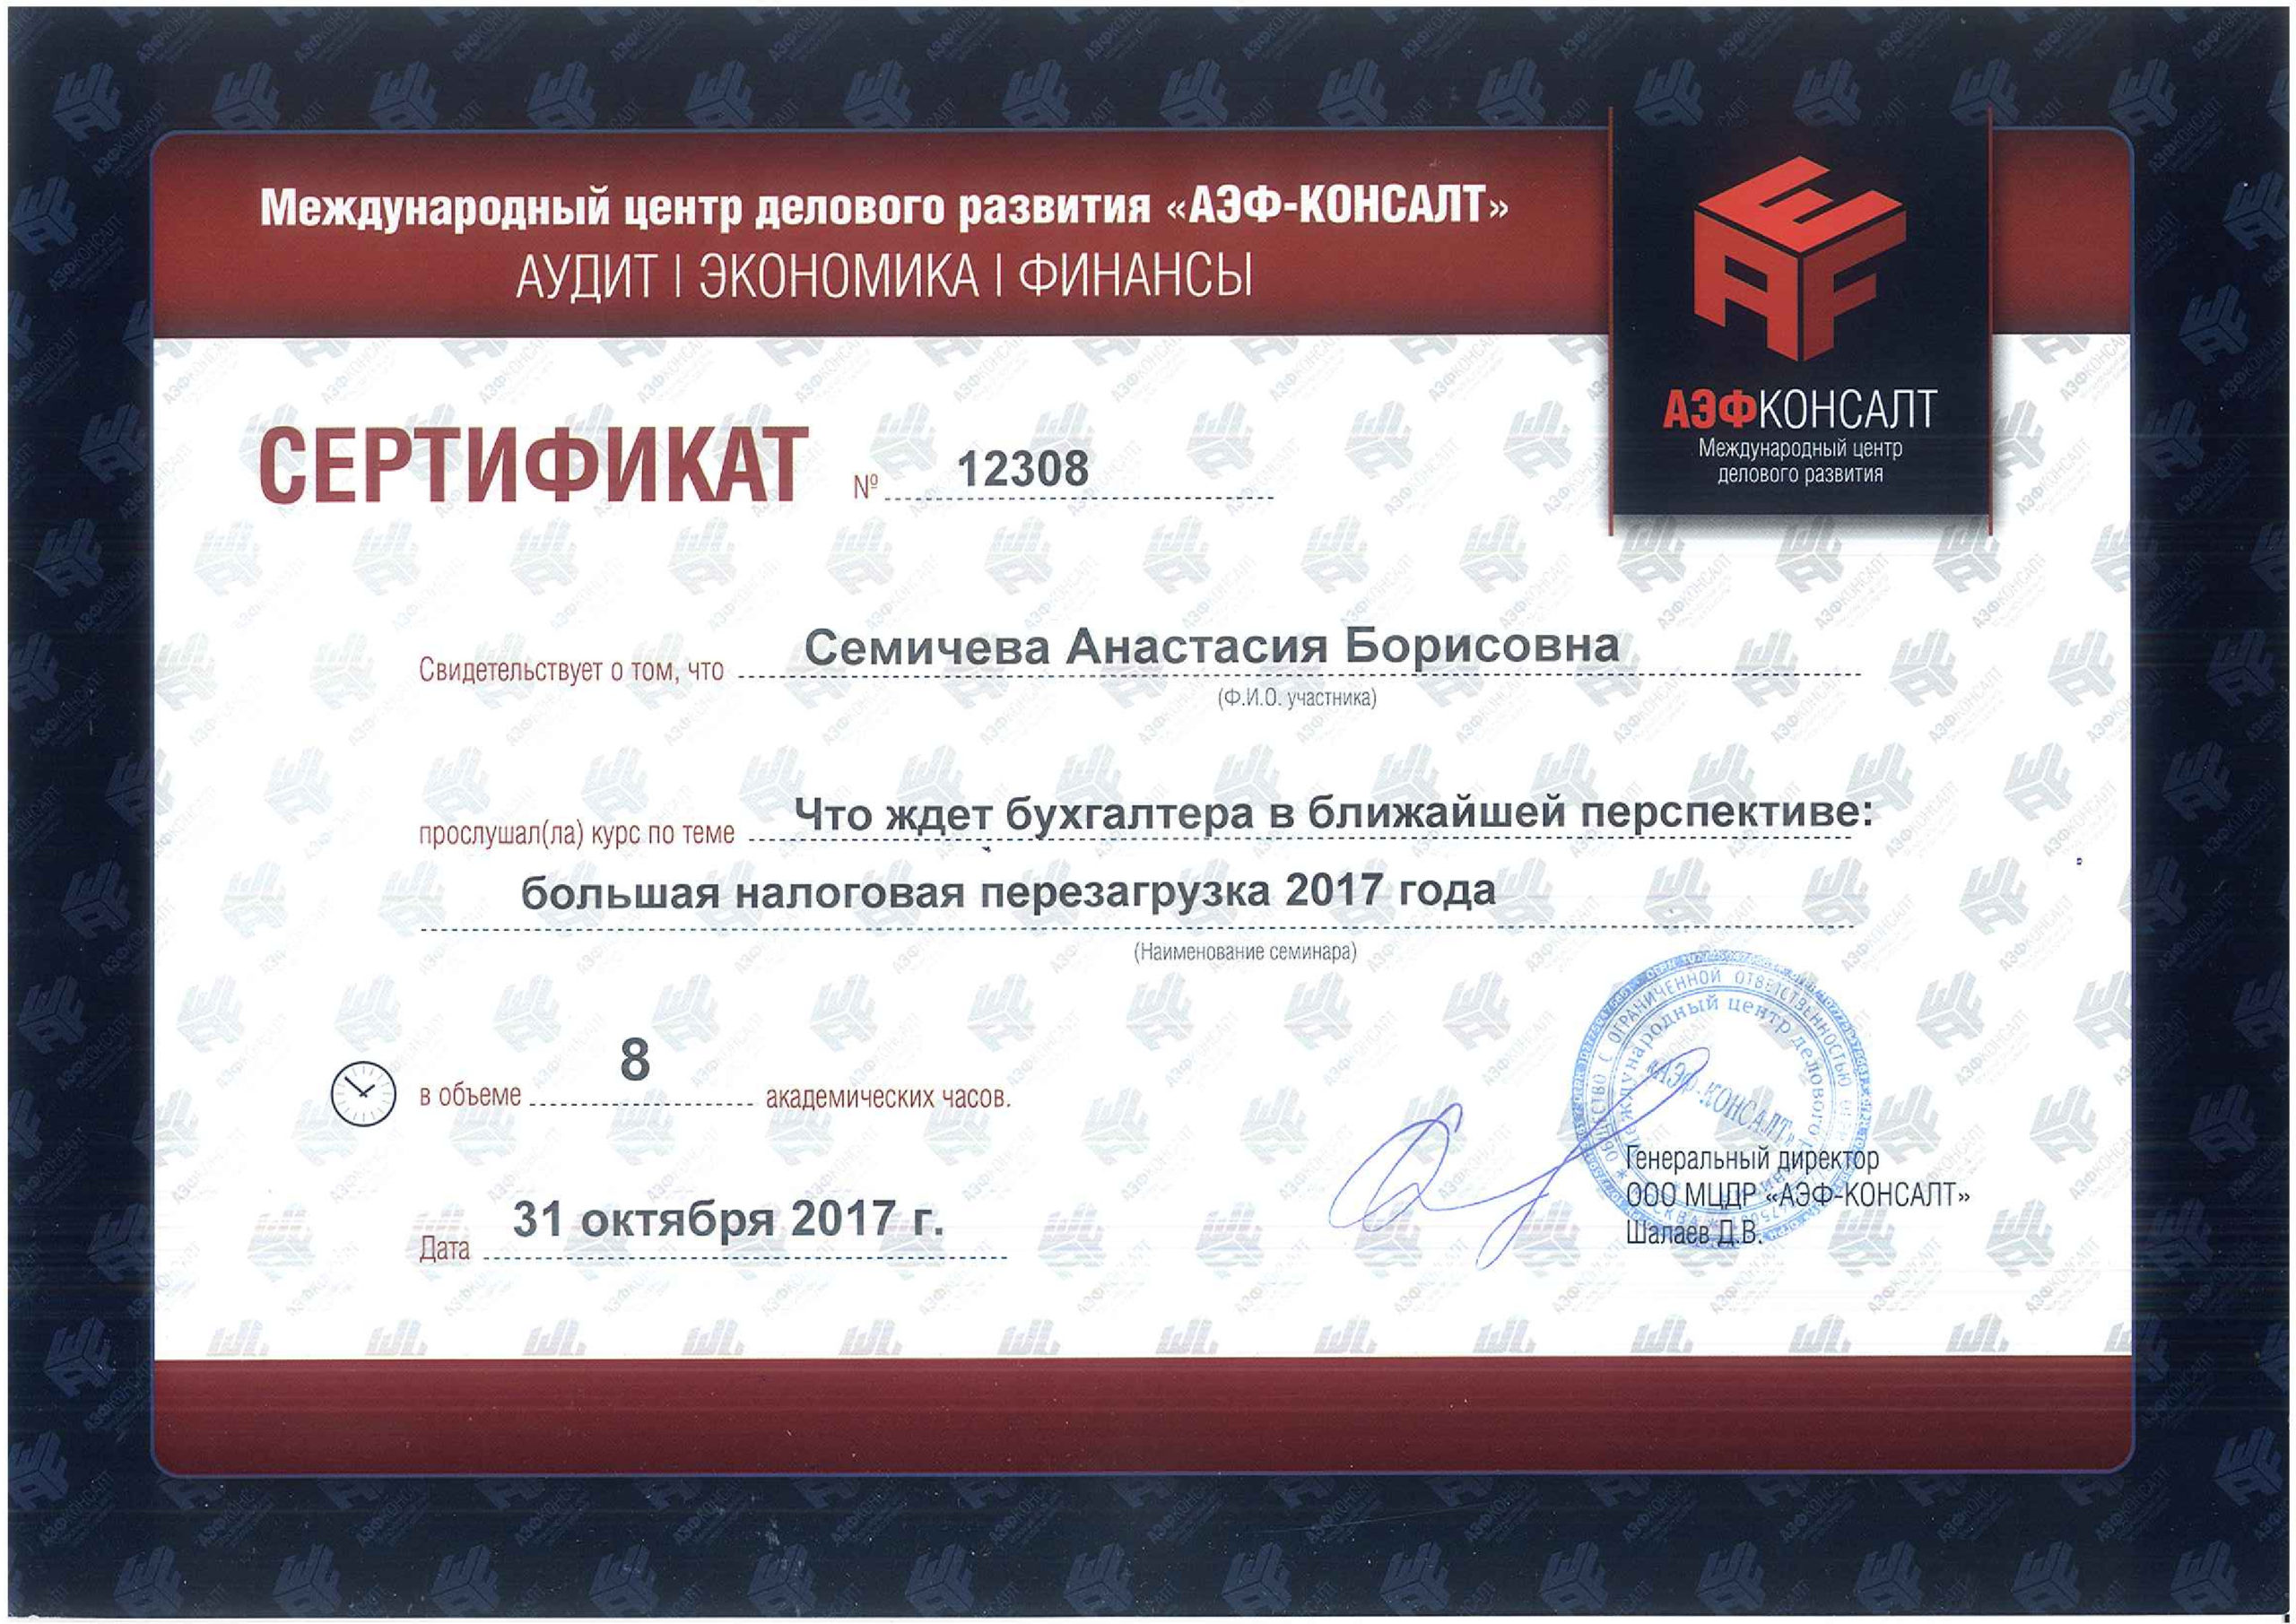 6_Сертификат_налоговая-перезагрузка-2017